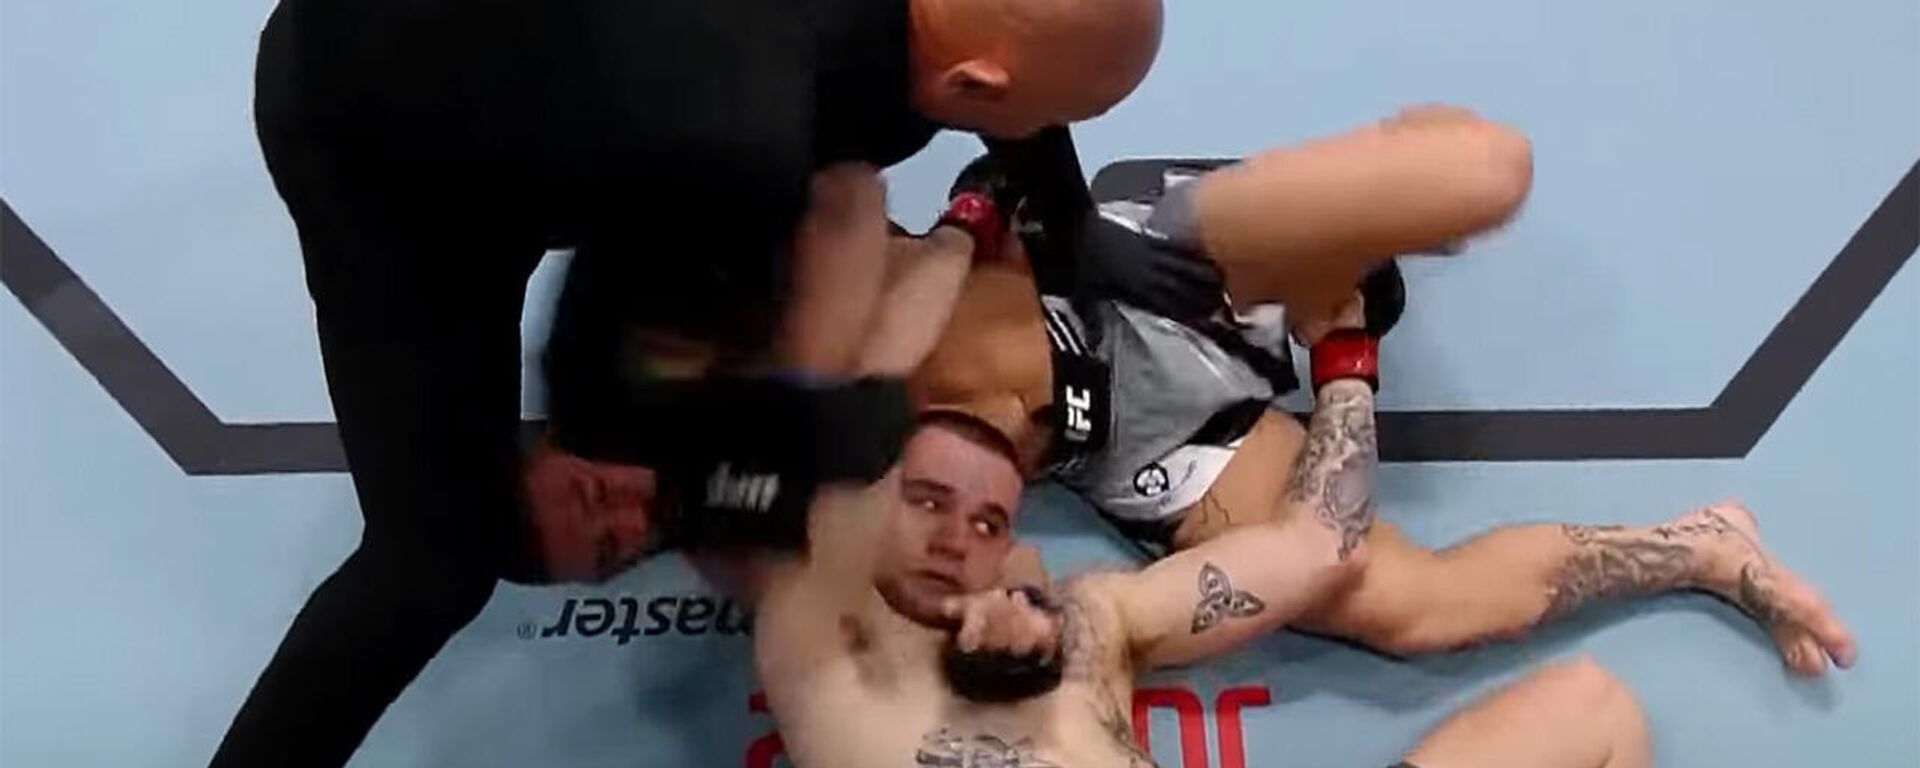 Удушение до потери сознания — видео лучших моментов турнира UFC Vegas 54 - Sputnik Кыргызстан, 1920, 15.05.2022